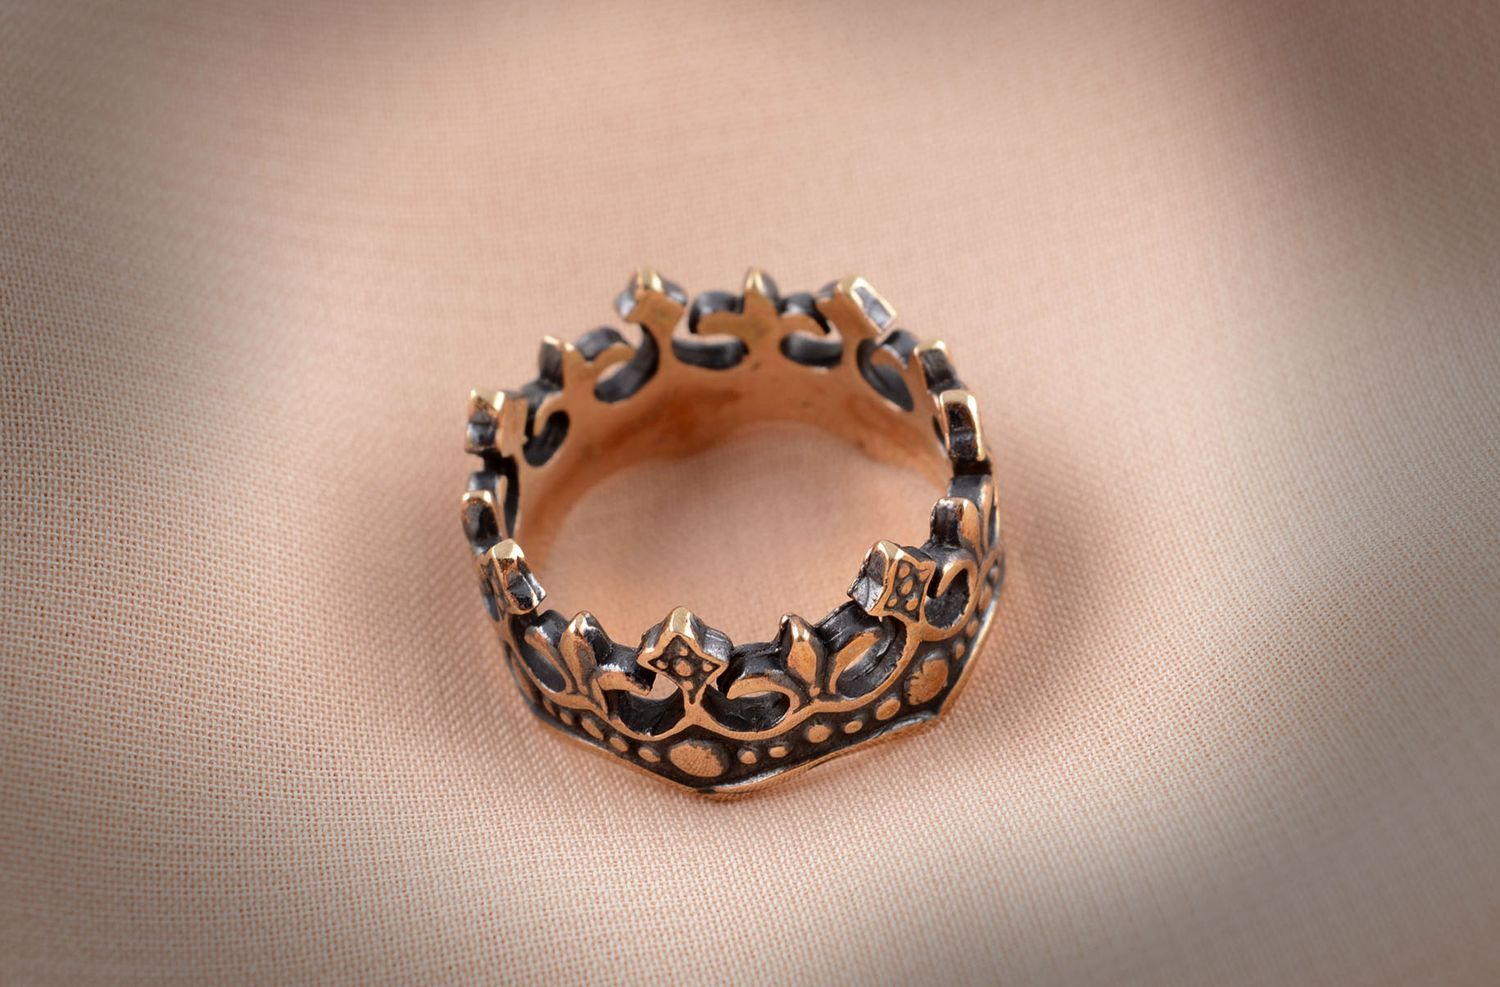 Handmade bronze ring bronze jewelry for women crown ring handmade jewelry photo 5